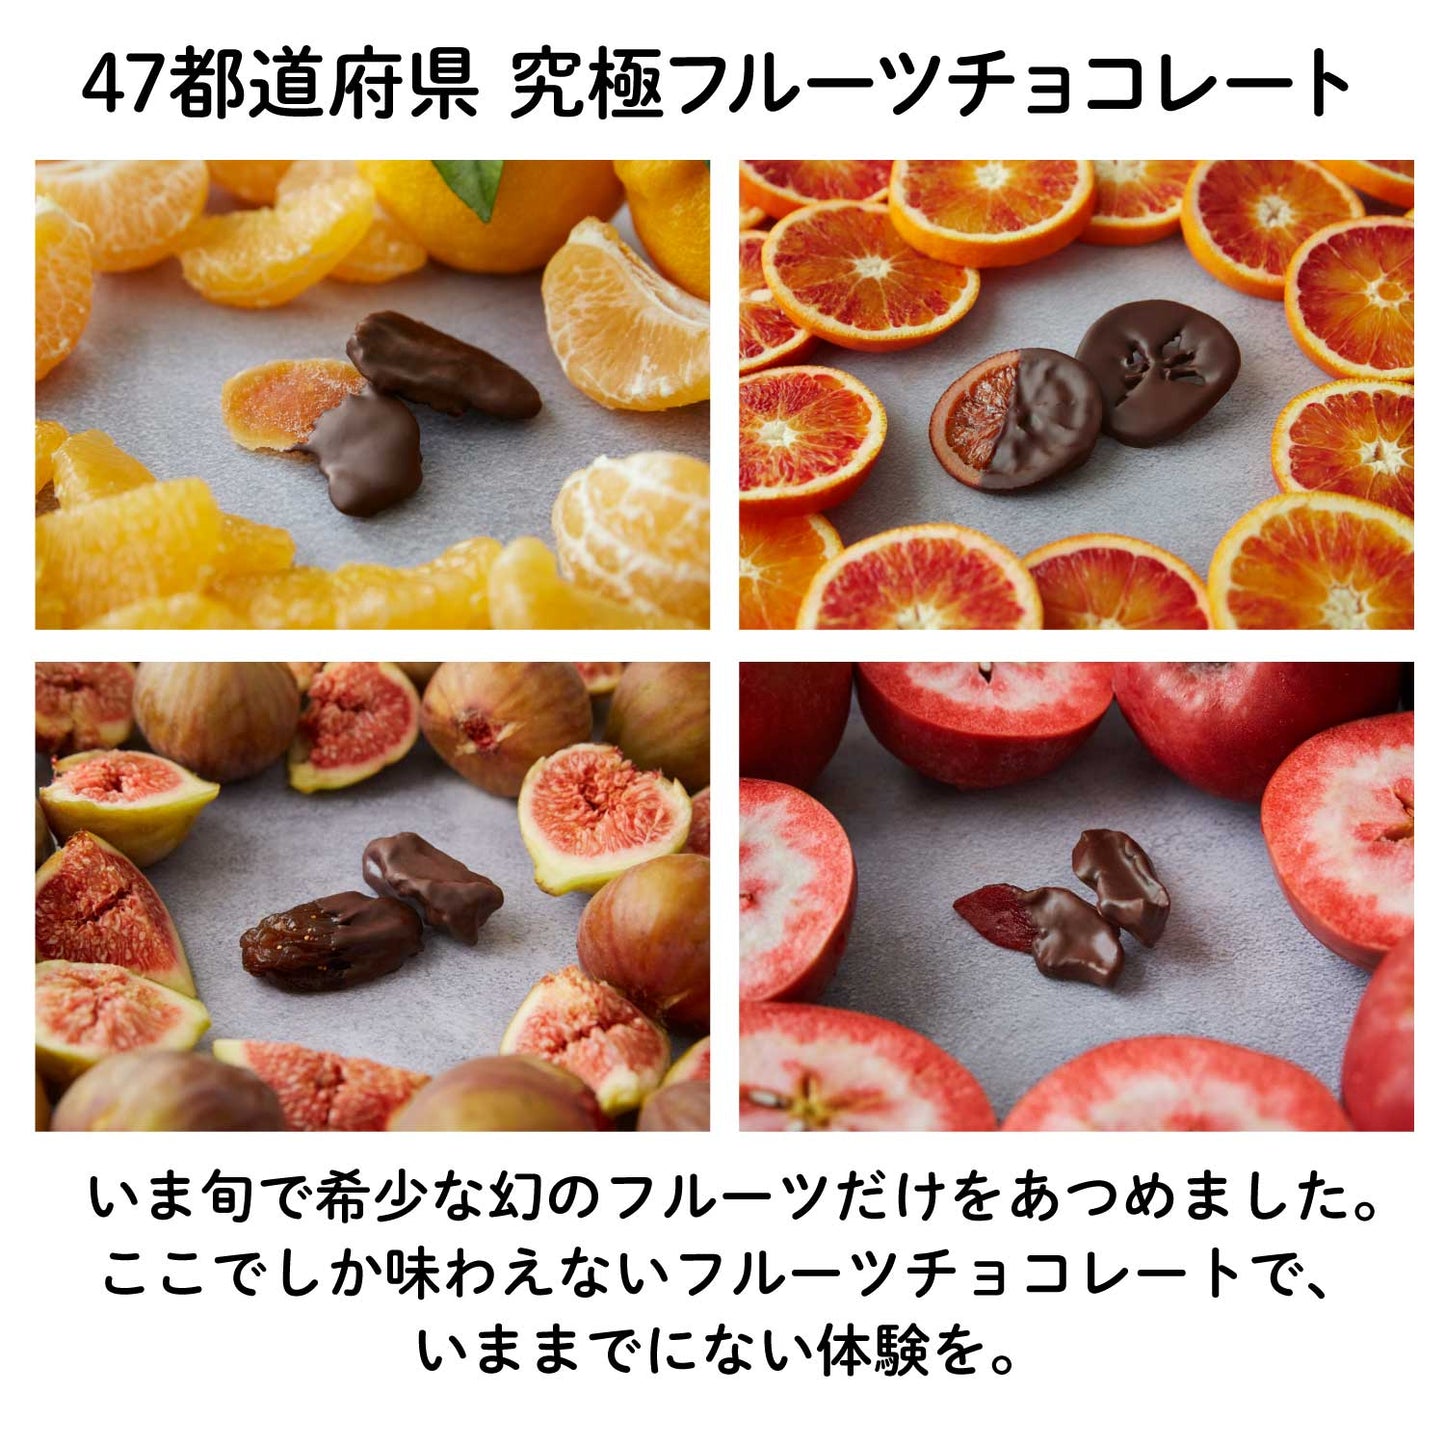 【NEW】いちごの王様"あまおう"フルーツチョコレート